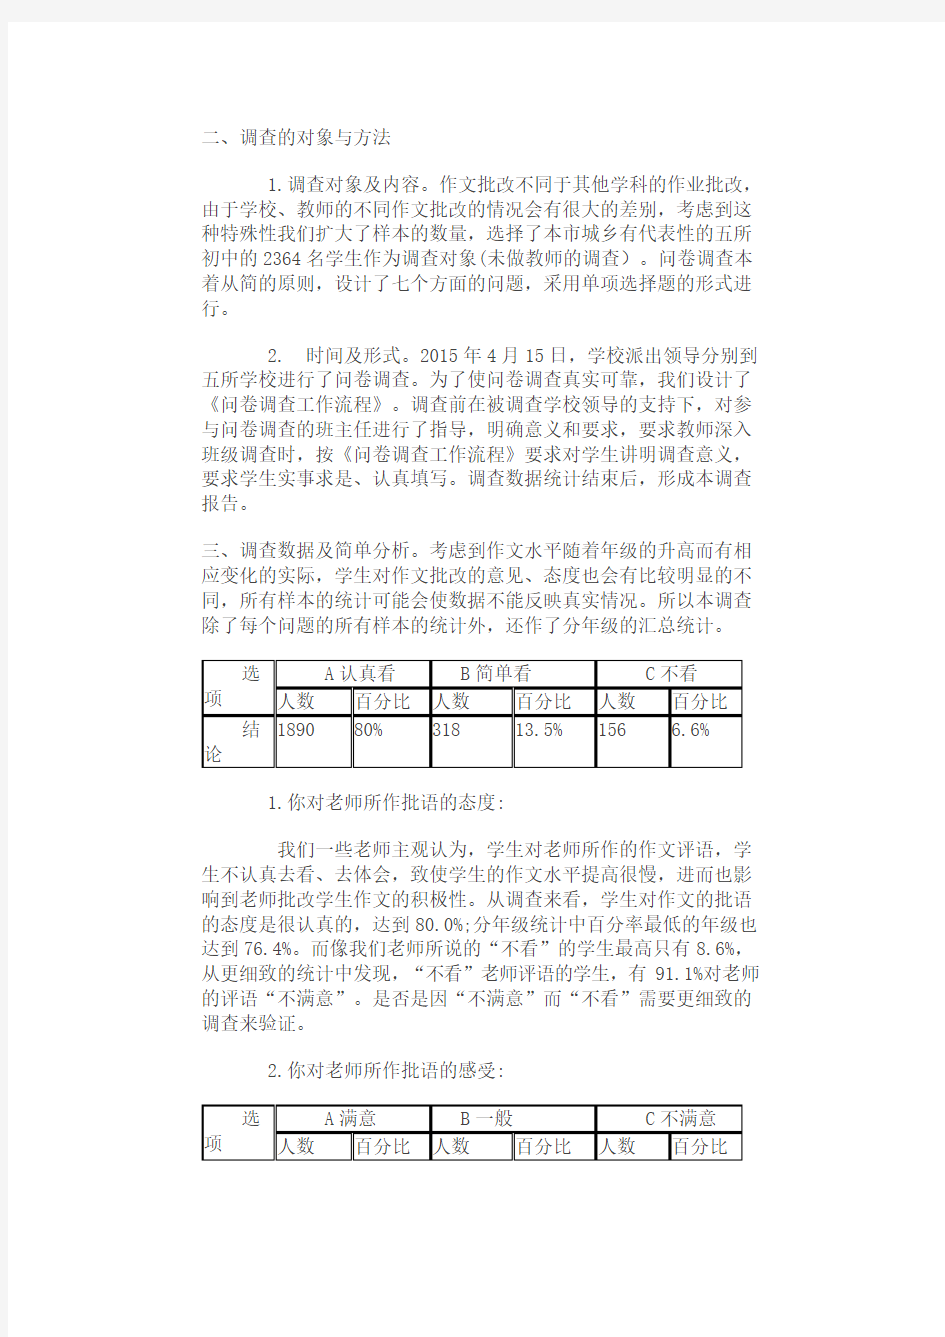 关于初中语文作文批改情况的调查